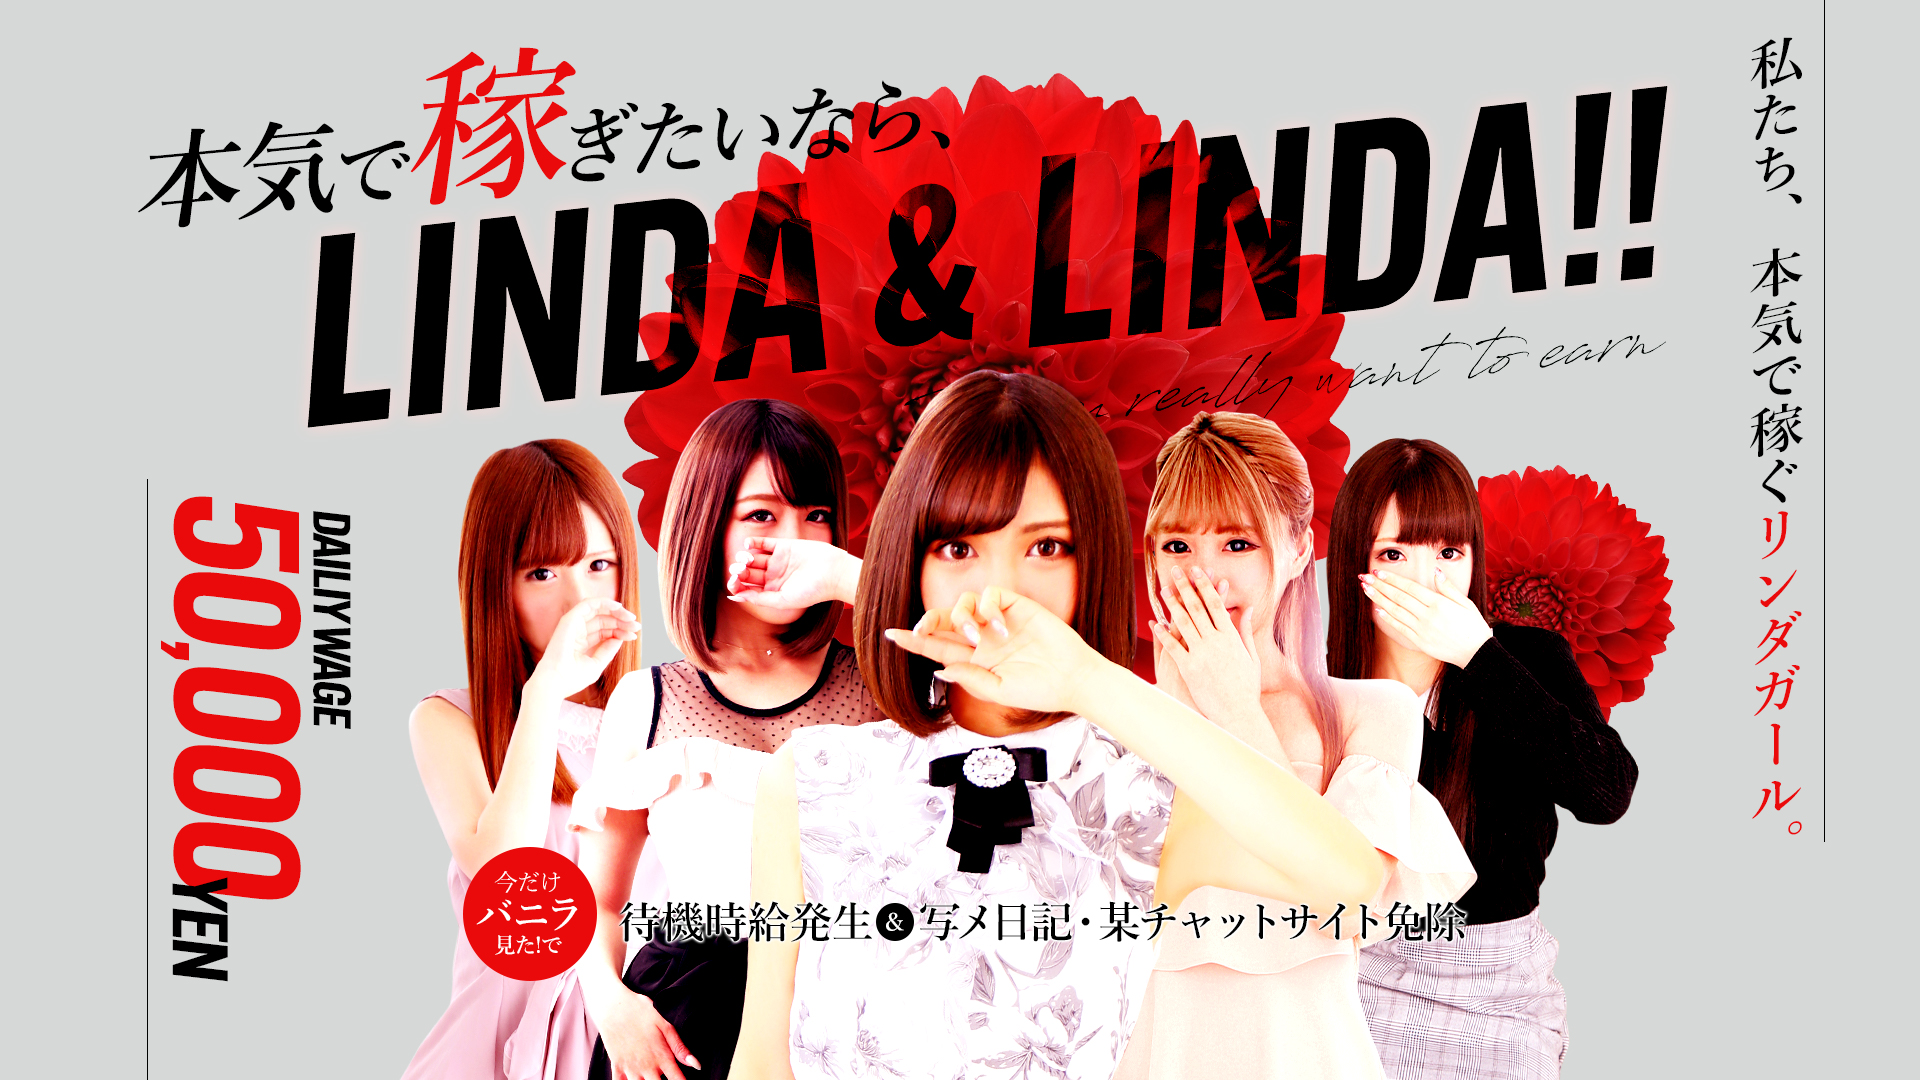 Linda&Linda阪神尼崎の求人画像